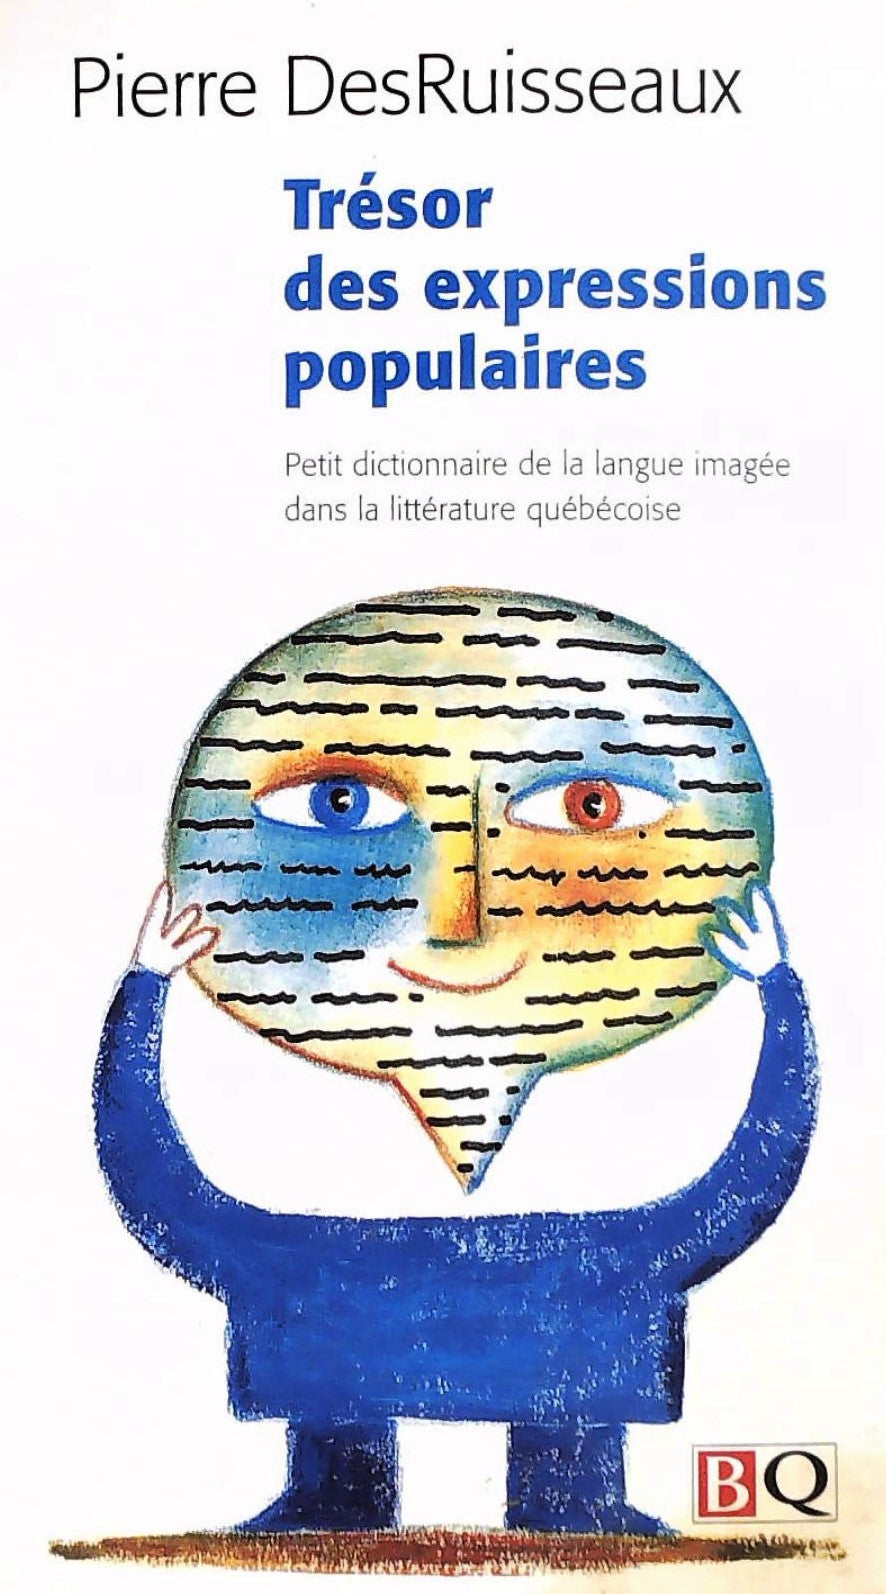 Livre ISBN 2894062559 Trésor des expressions populaires : Petit dictionnaire de la langue imagée dans la littérature québécoise (Pierre DesRuisseaux)